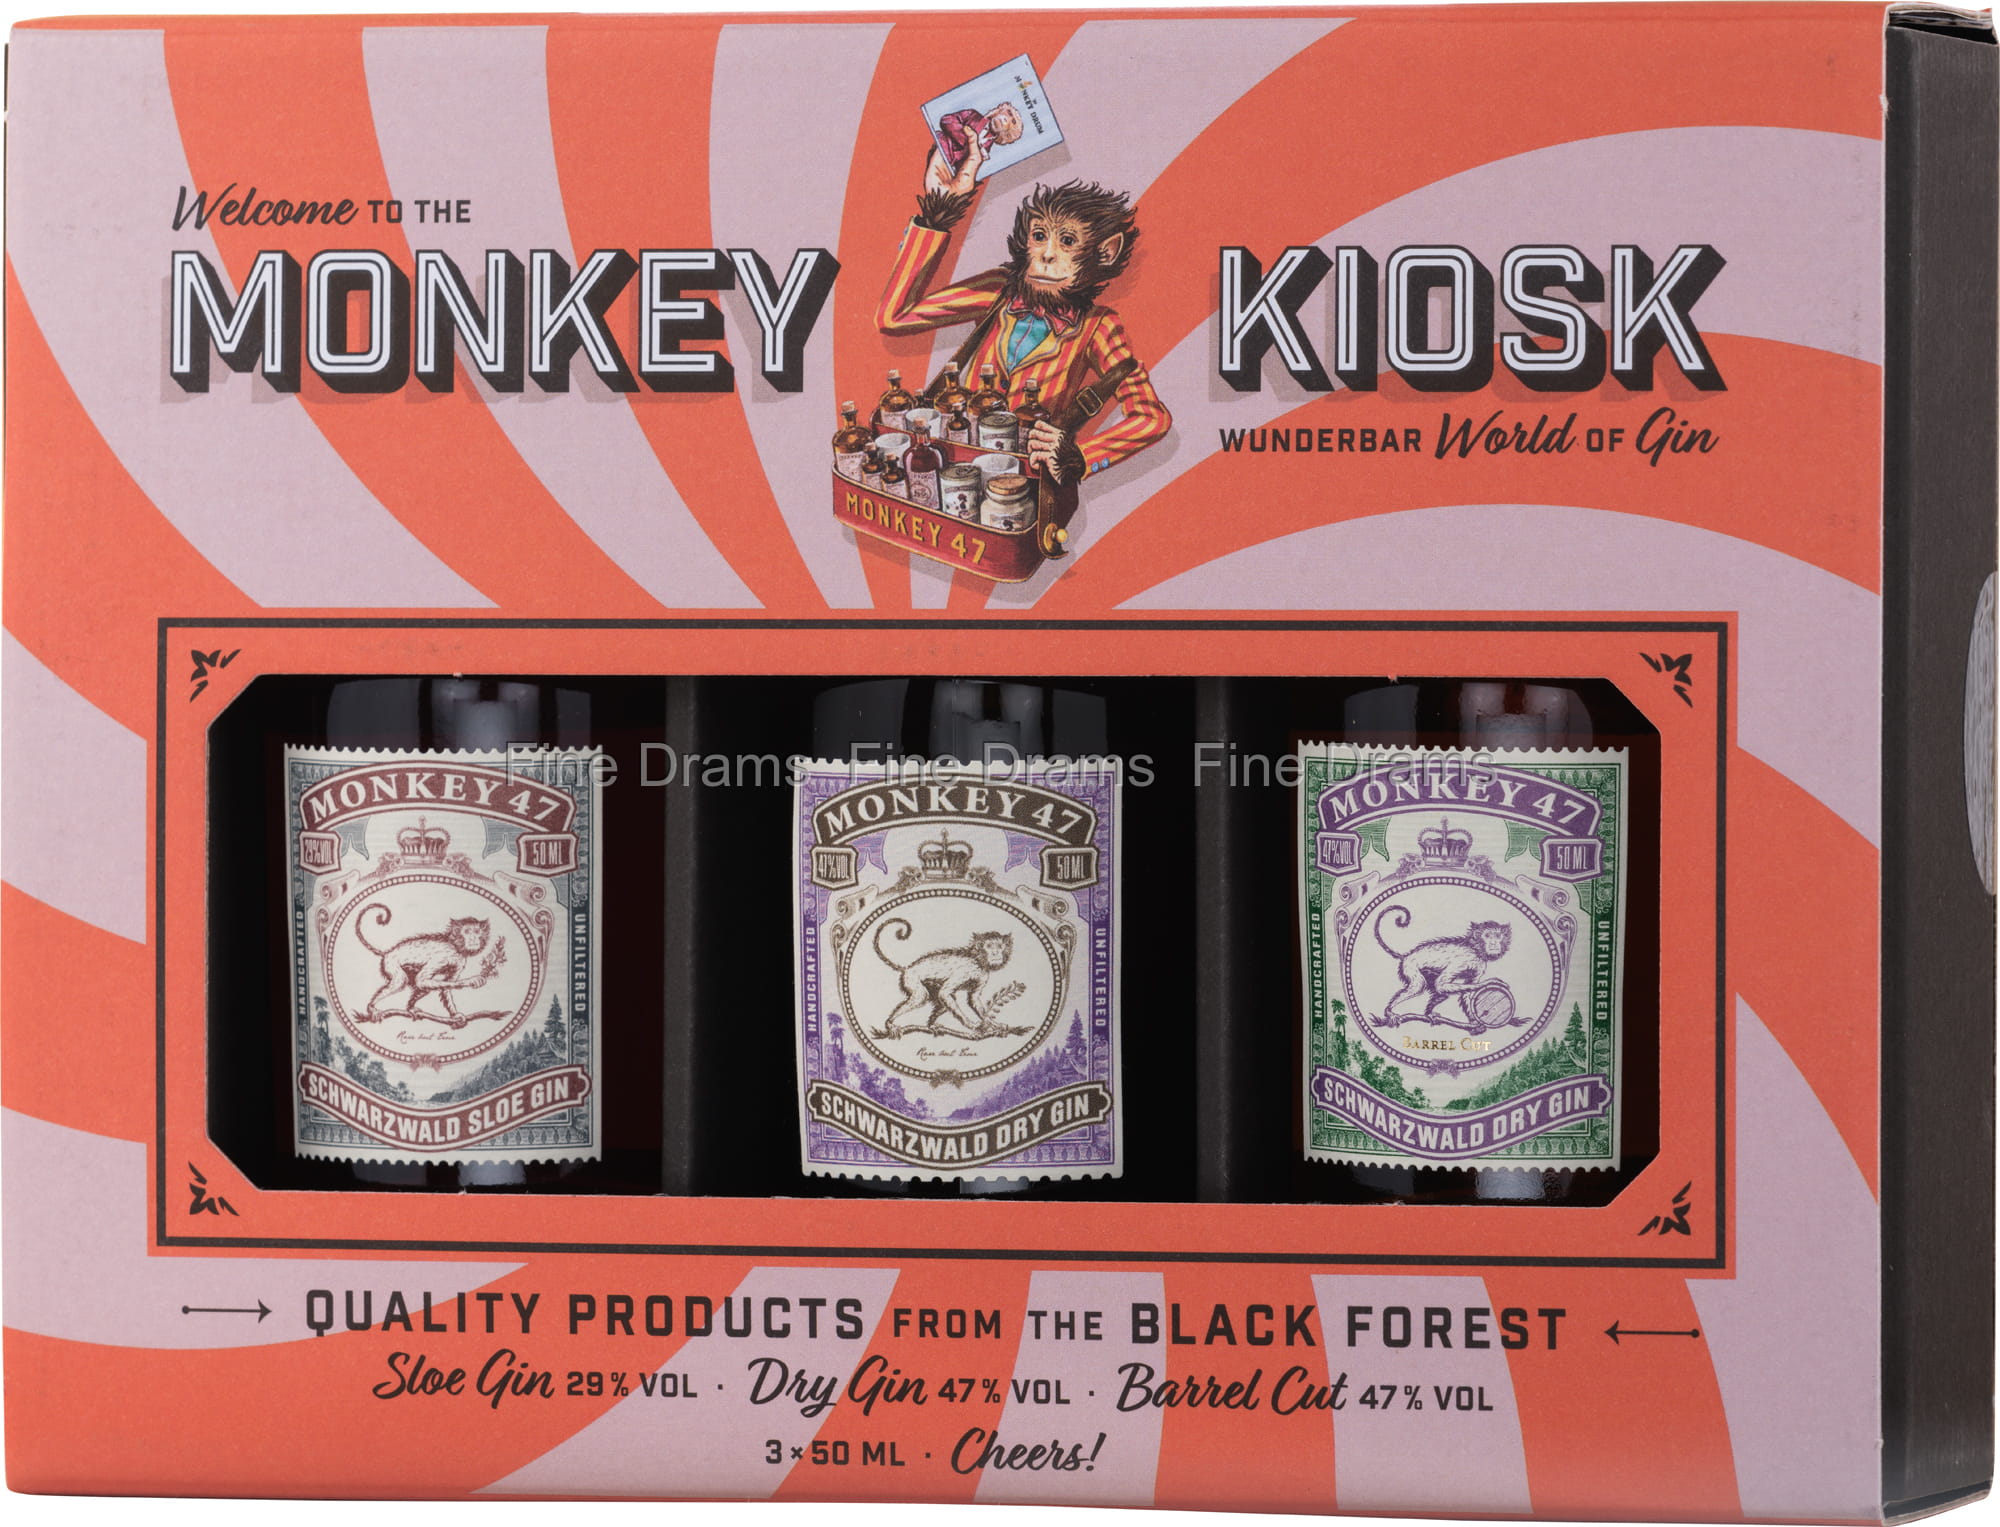 Monkey 47 Kiosk Miniature Set - 3 x 5 cl